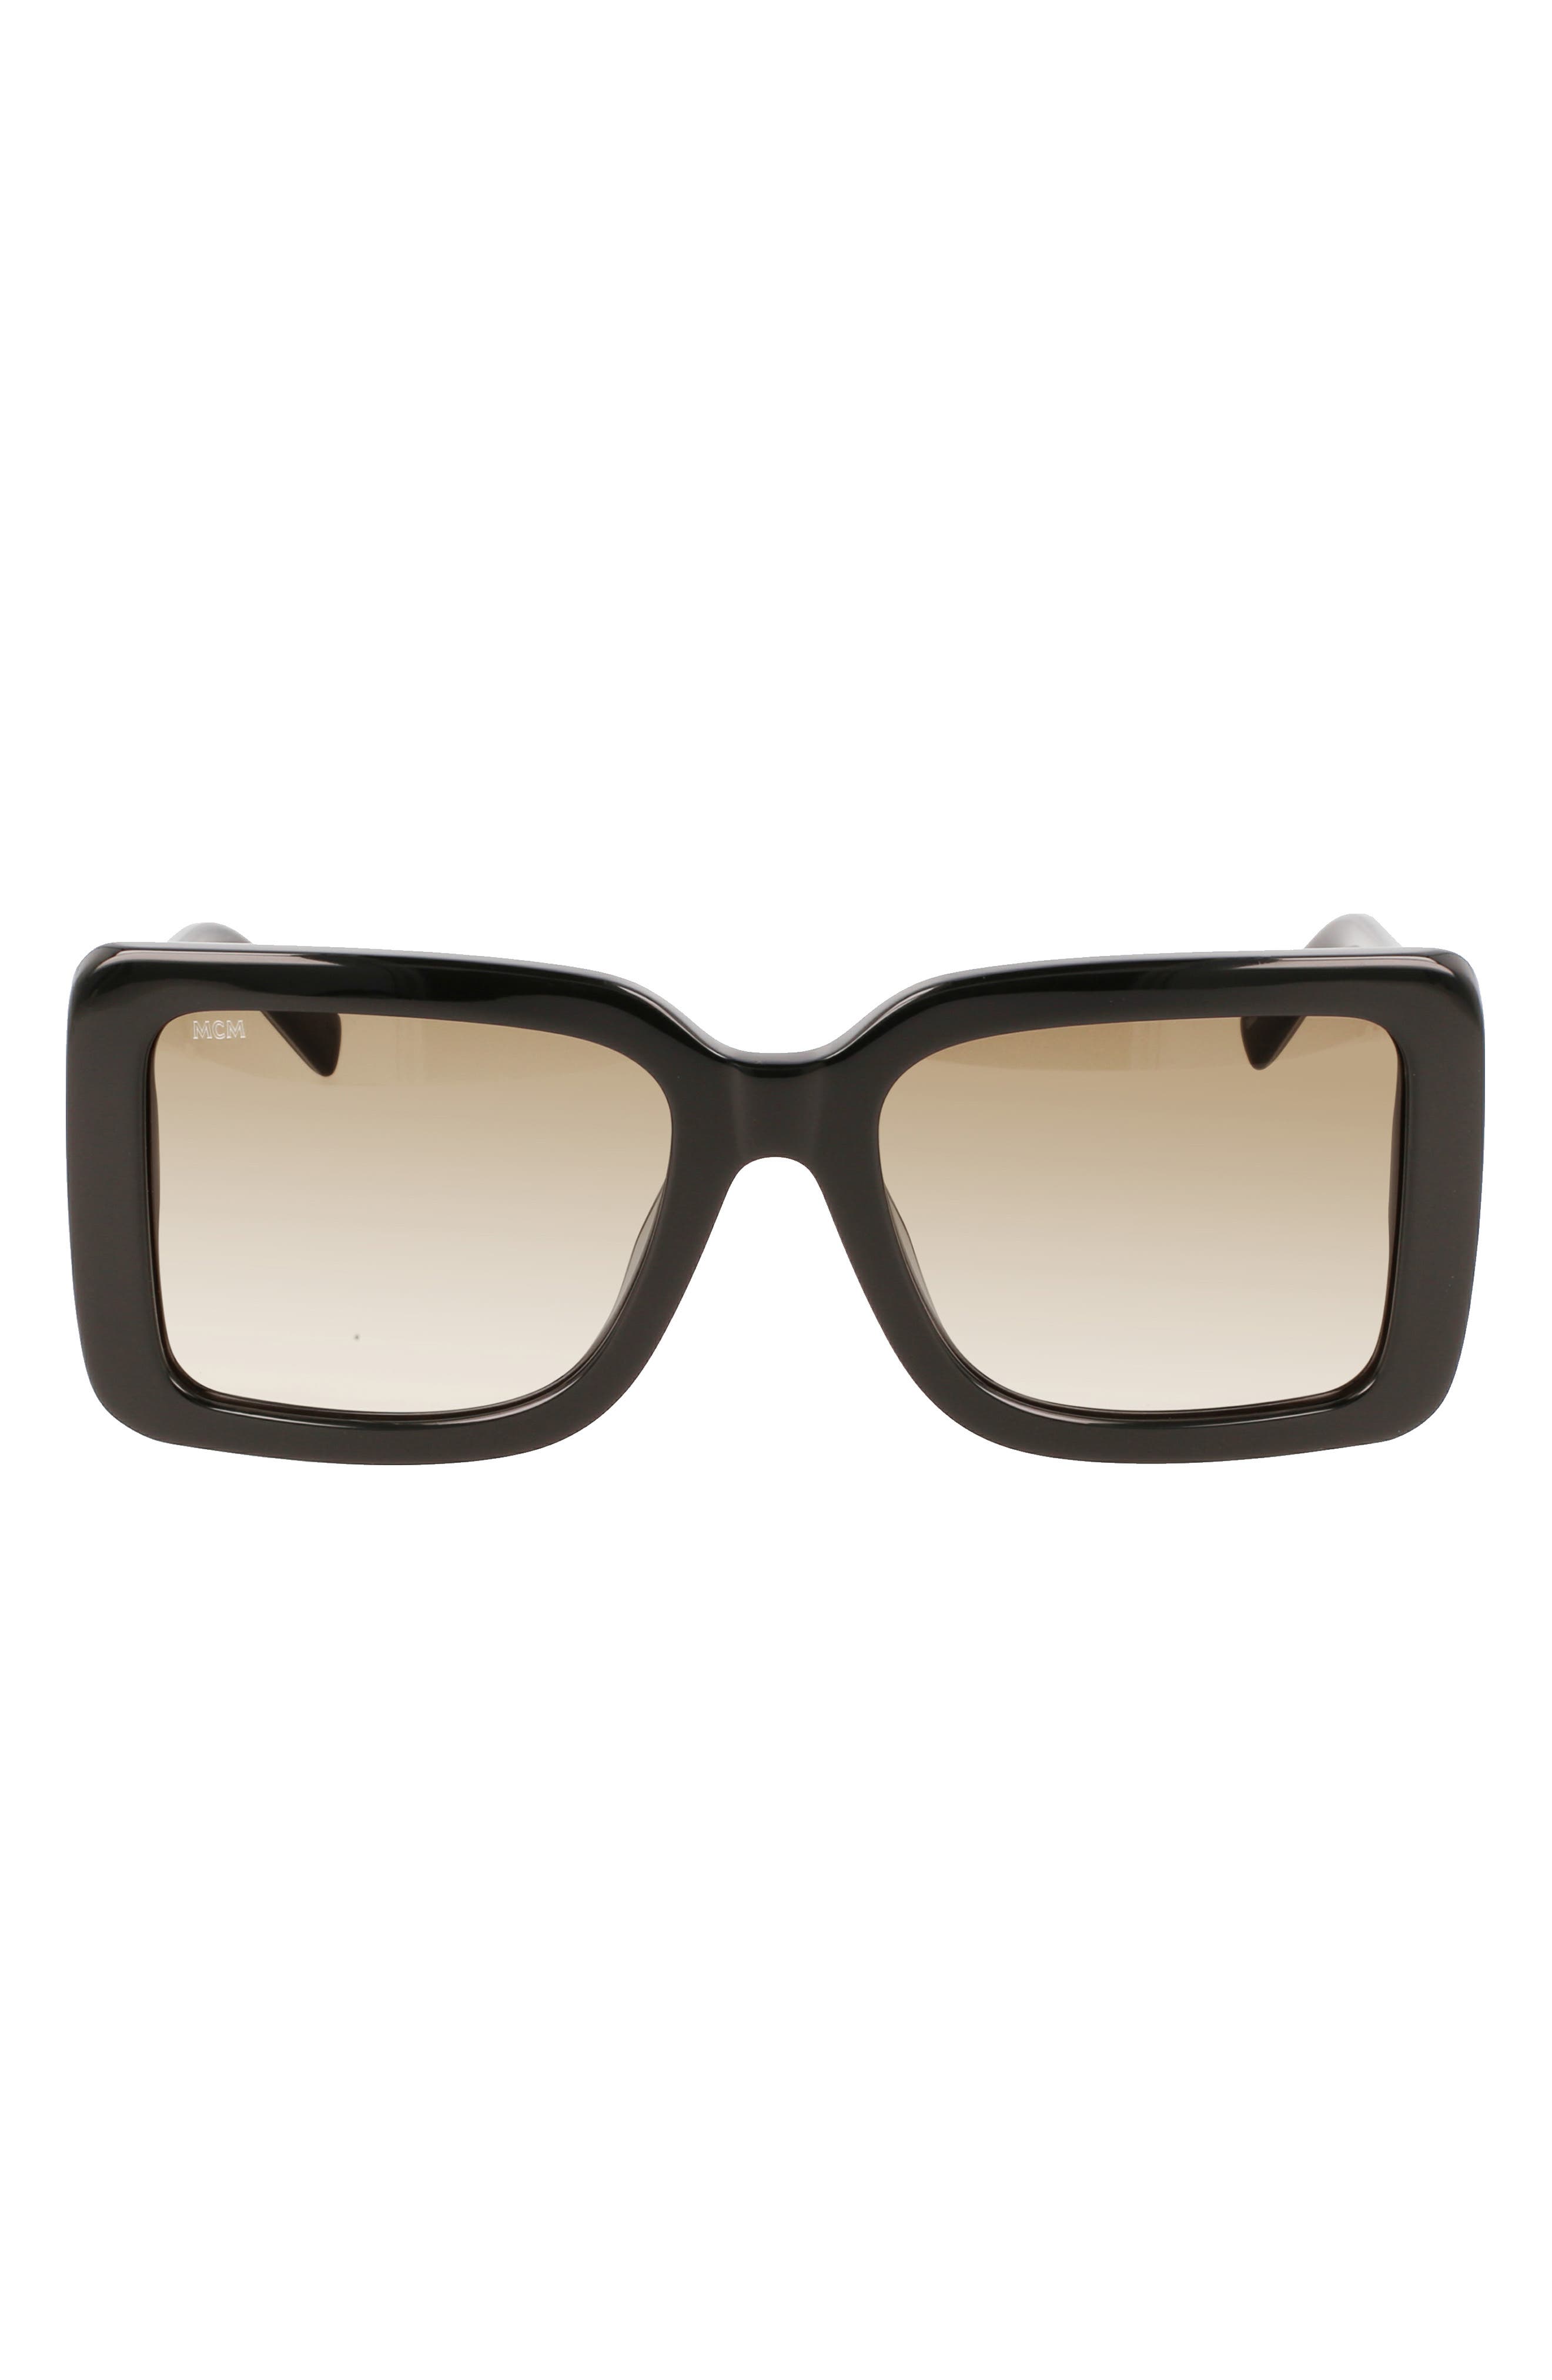 DVF Womens Grace Rectangular Sunglasses Black/Black 54 mm